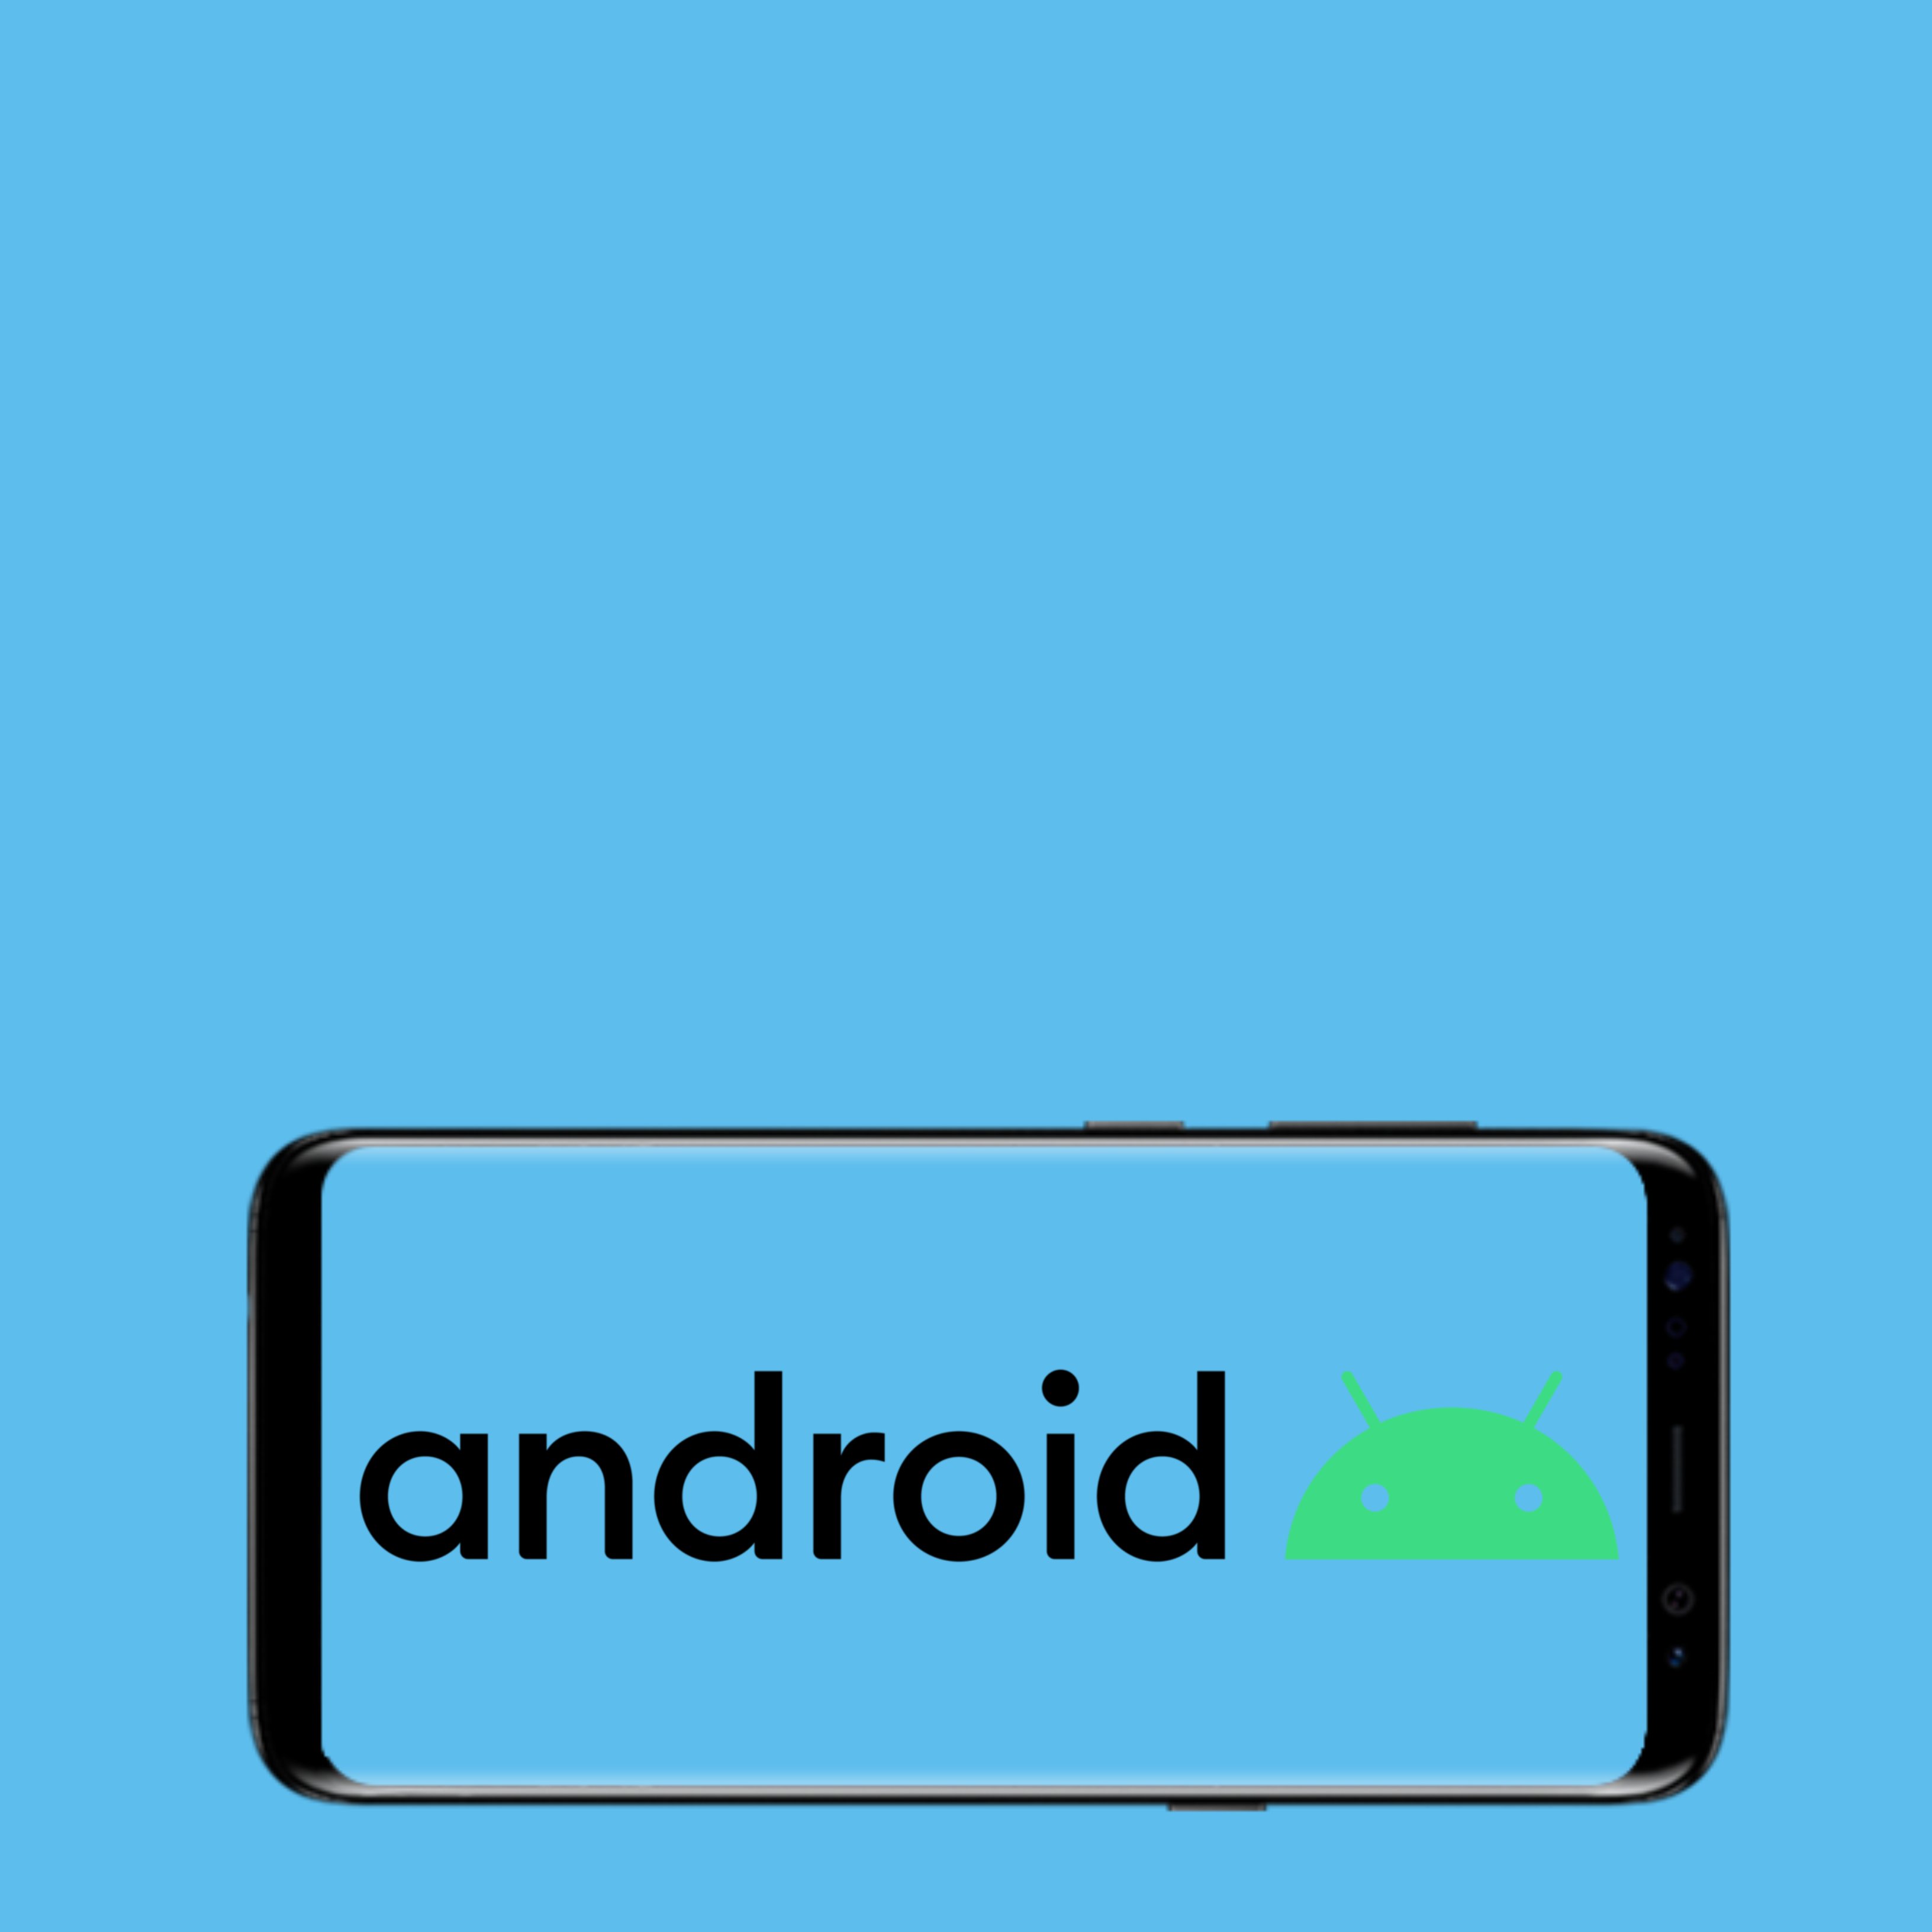 Ya ha llegado Android 10 y estas son sus principales novedades